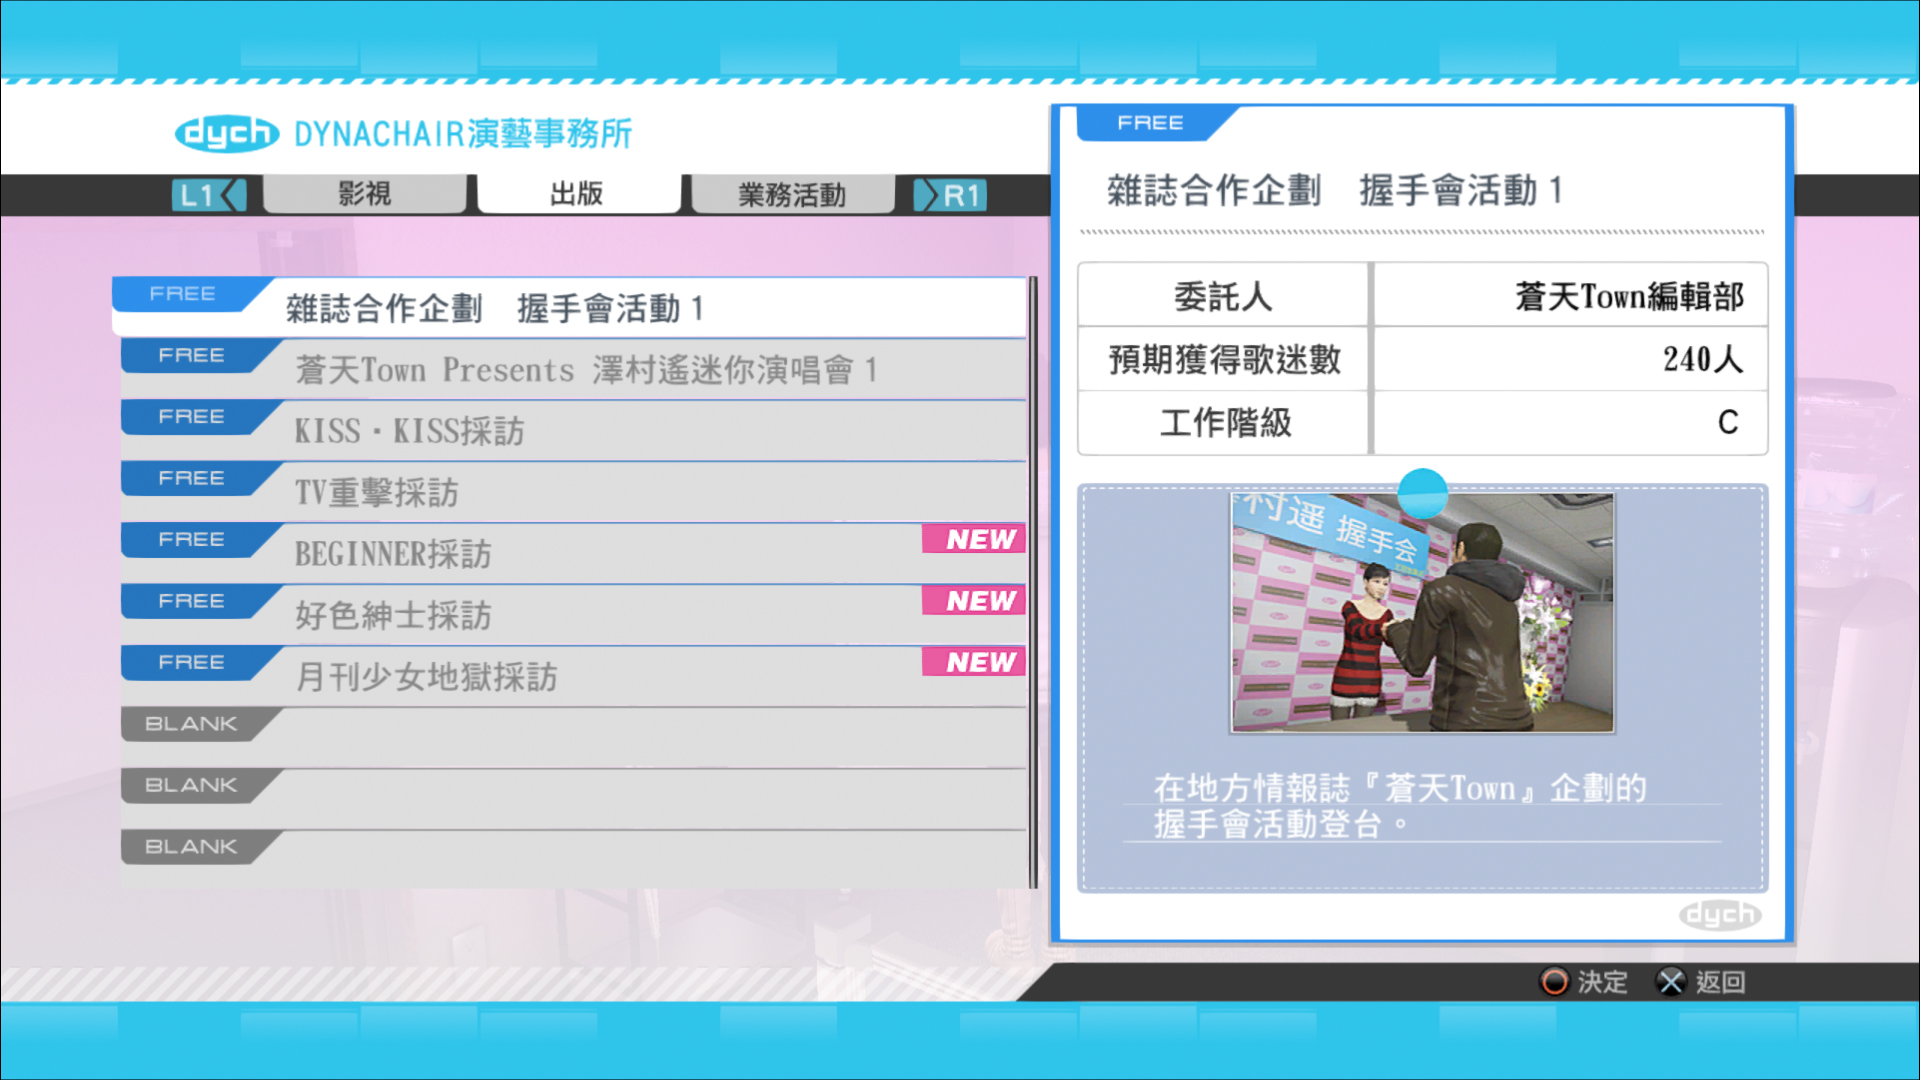 《如龙5》重制版繁中官网公开 全新中文版截图披露